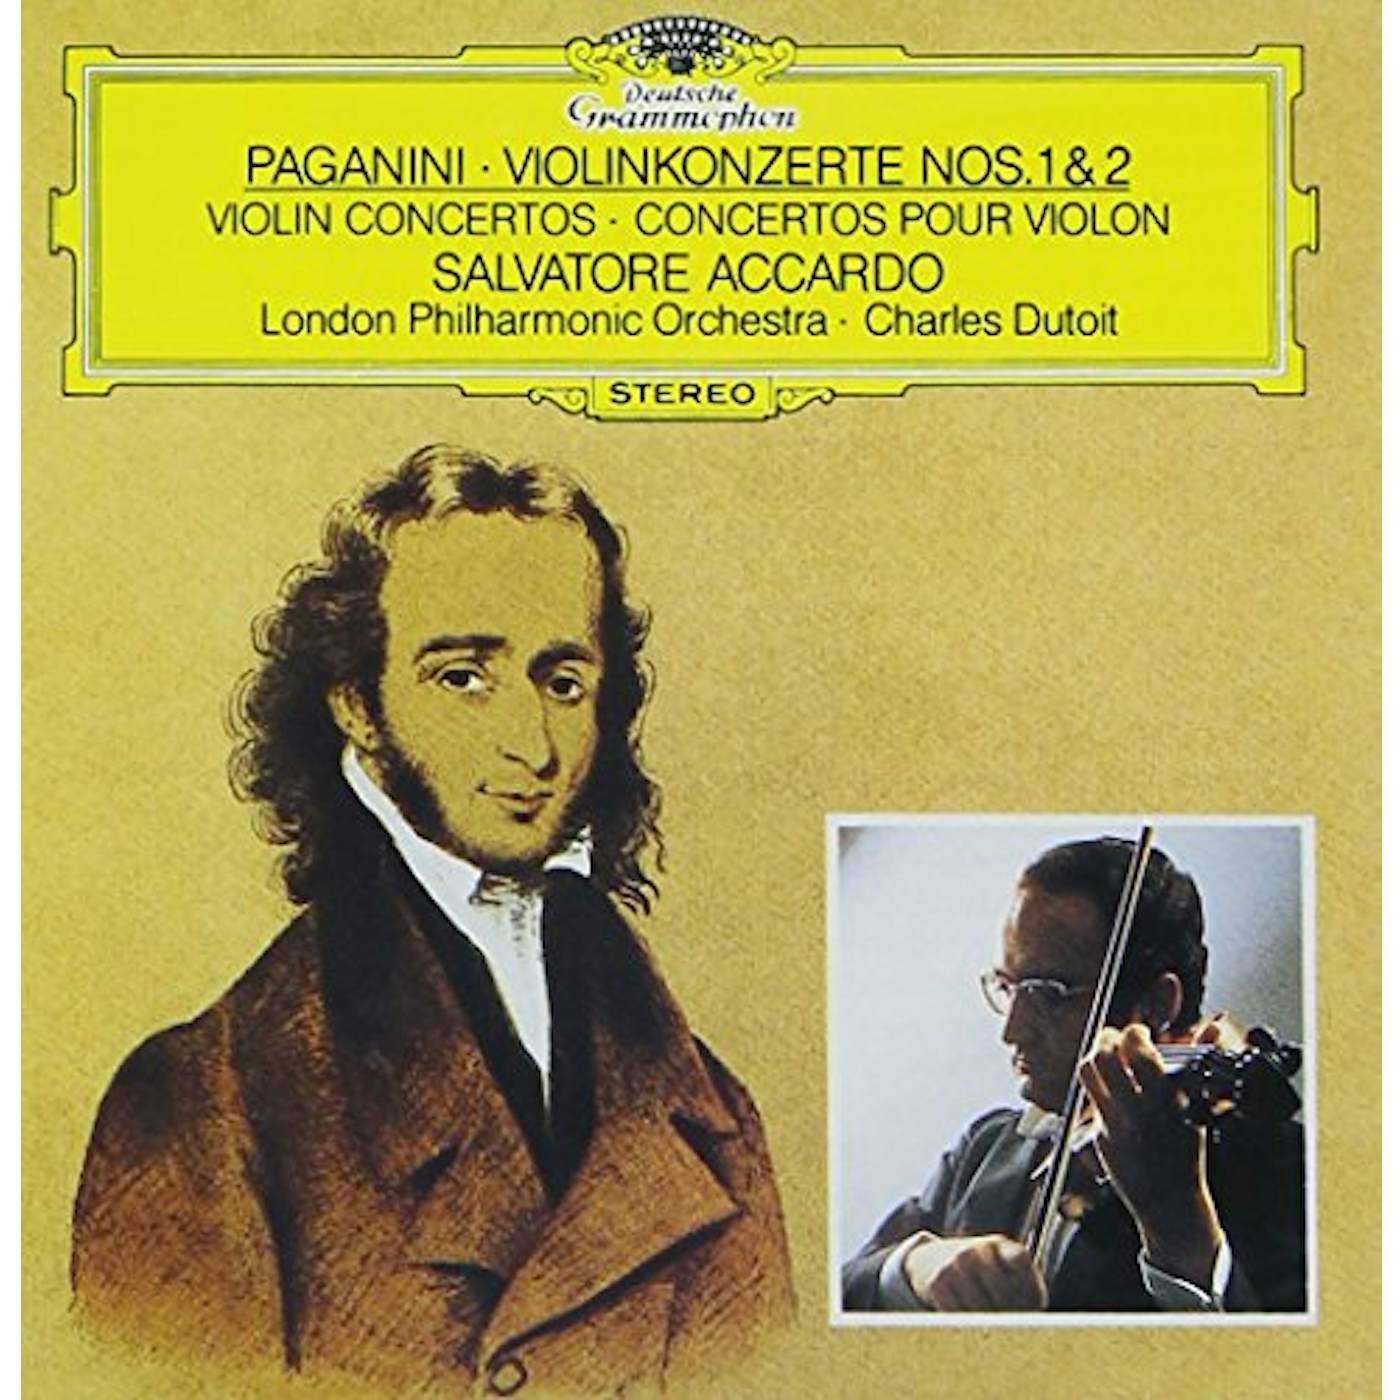 Salvatore Accardo PAGANINI: VIOLIN CONCERTOS NOS.1 & 2 CD